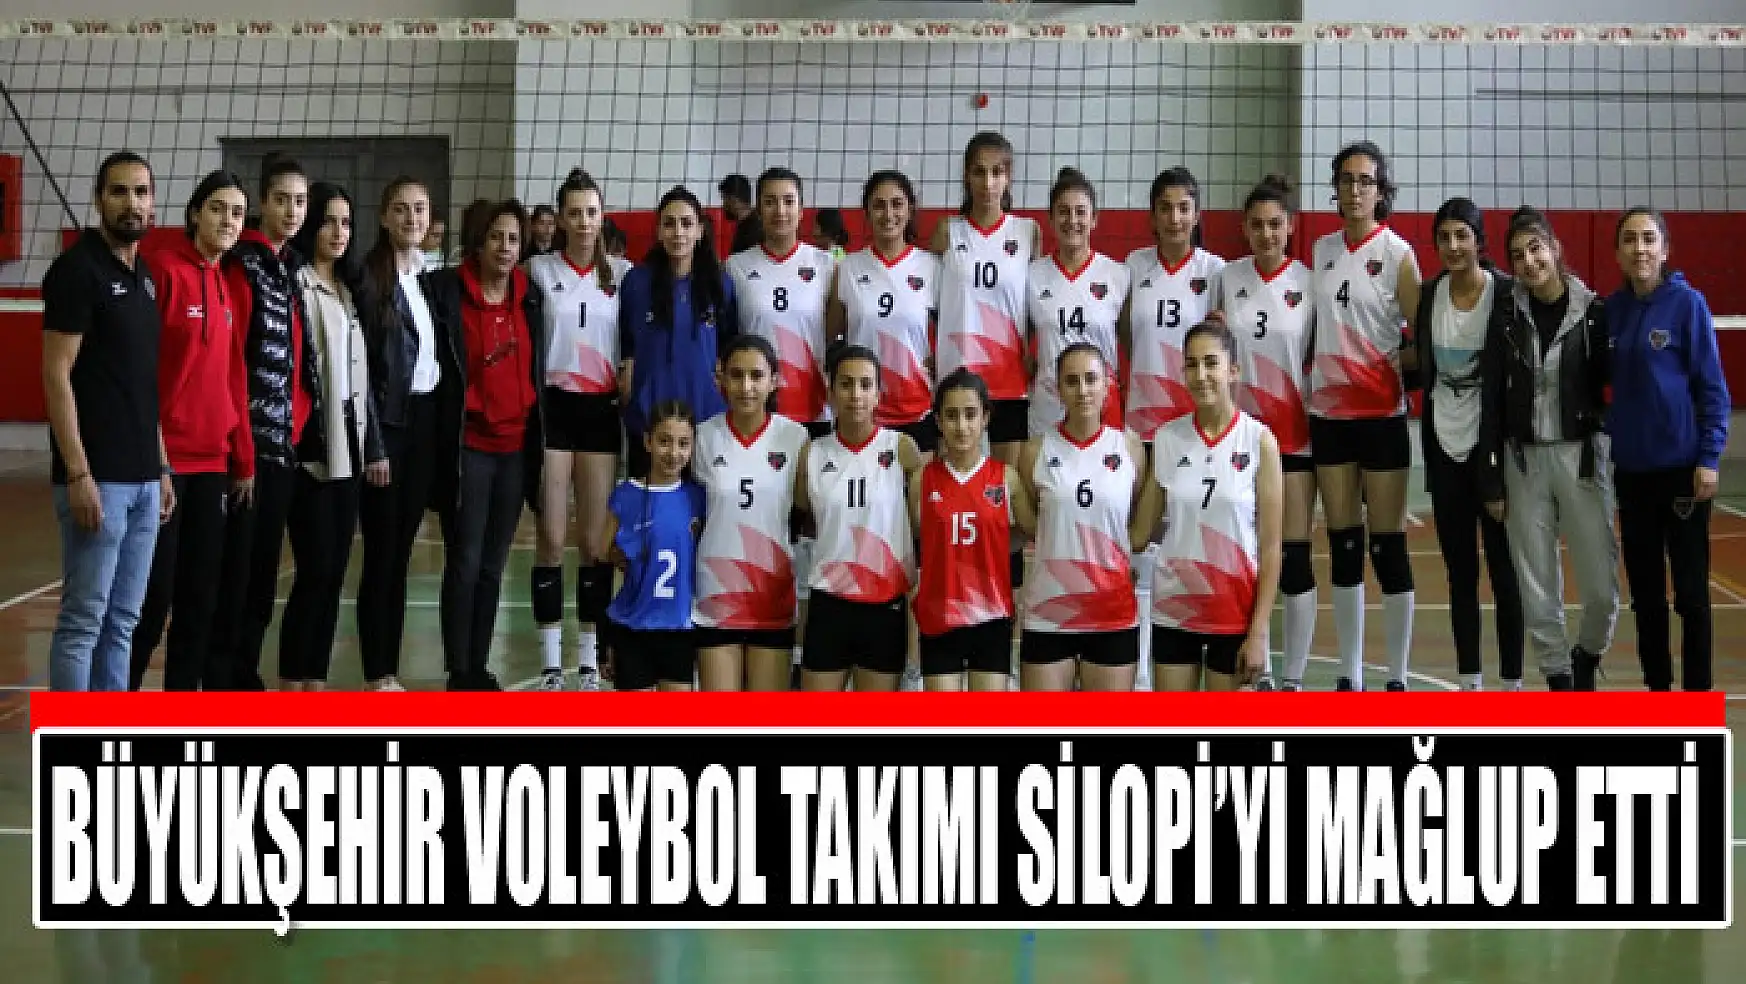 Büyükşehir voleybol takımı Silopi'yi mağlup etti